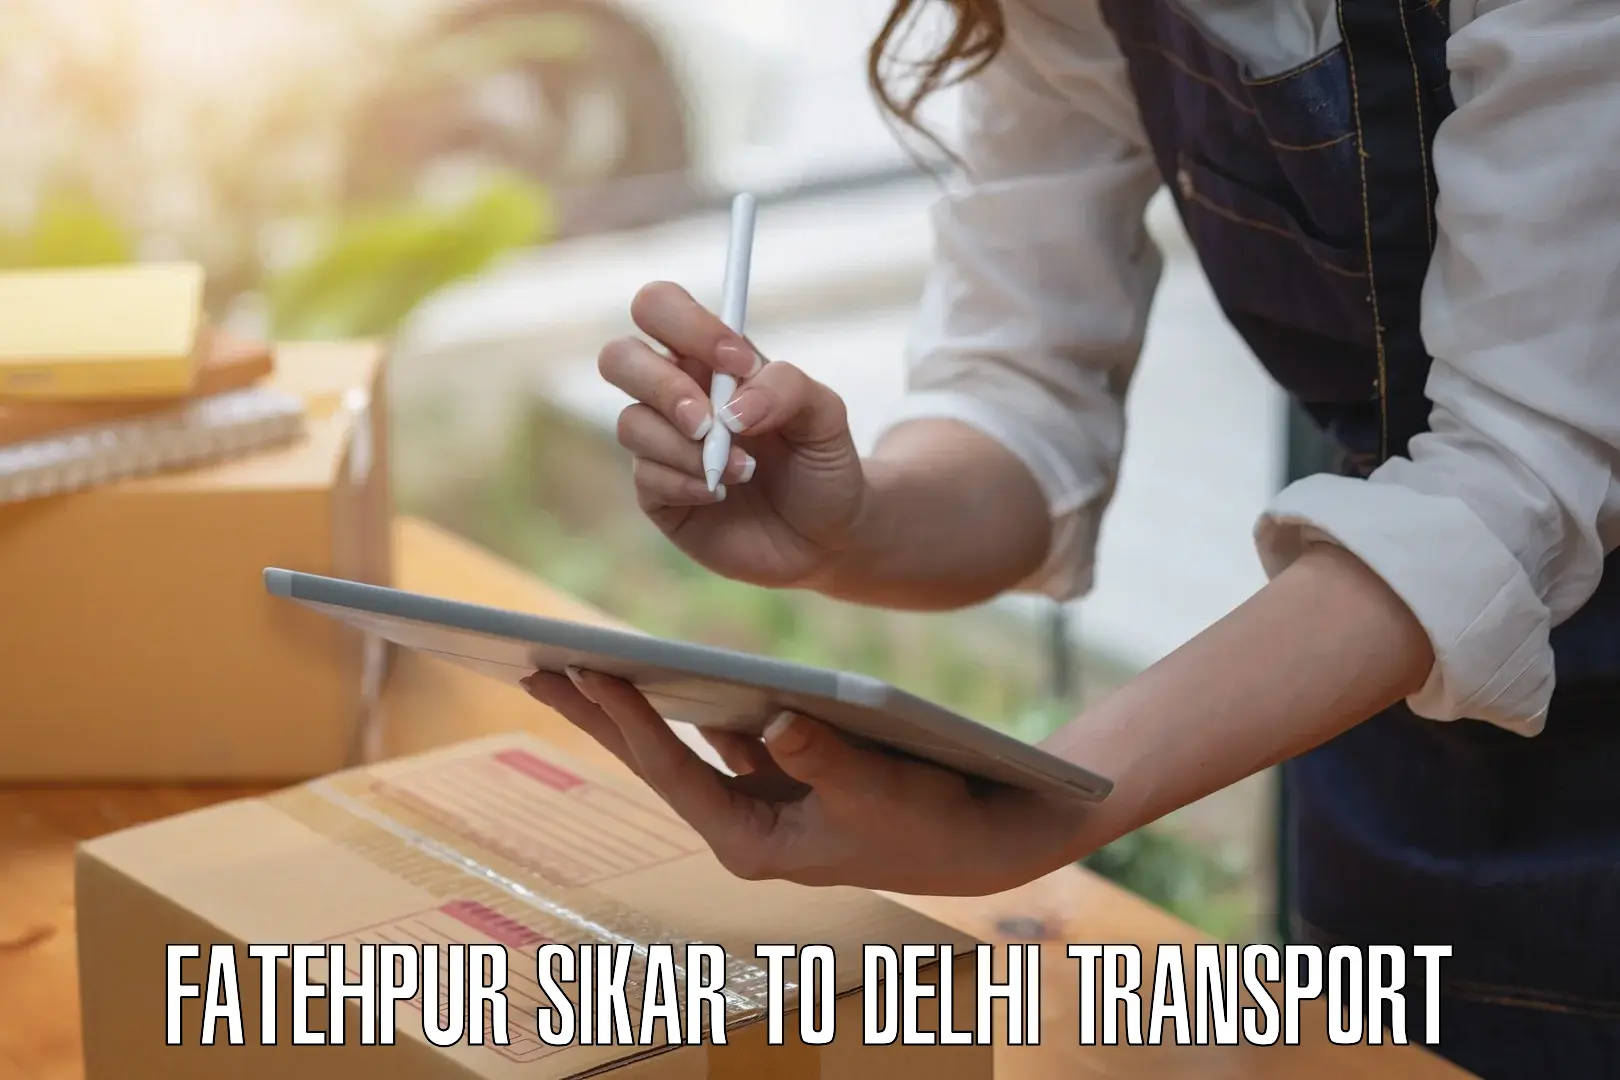 Furniture transport service Fatehpur Sikar to NIT Delhi